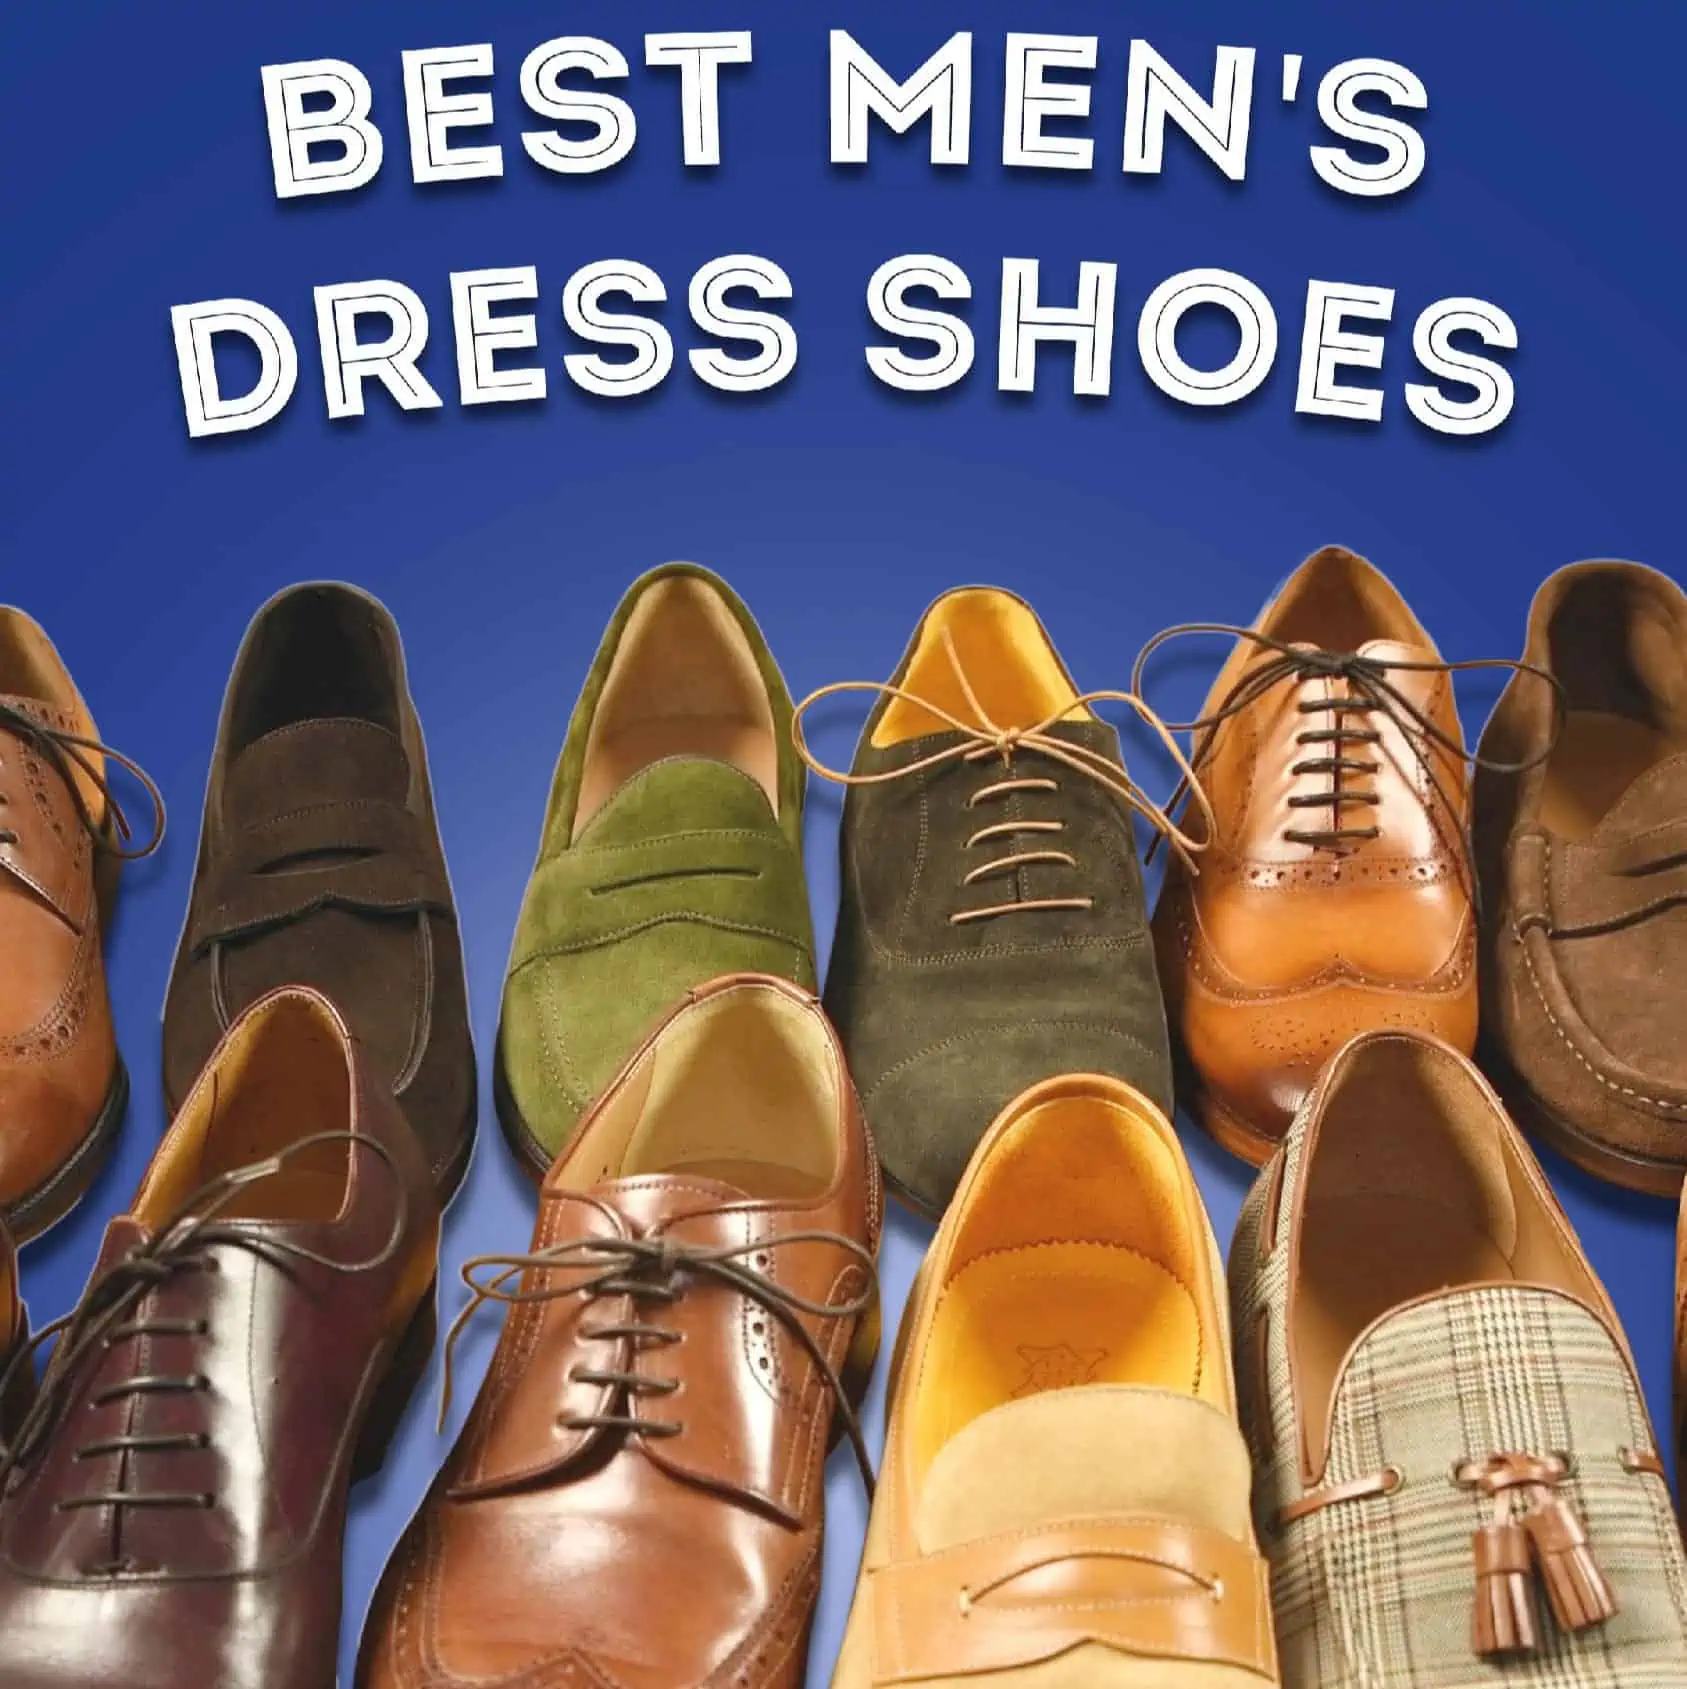 Louis-Vuitton-Men-Lace-ups-1  Dress shoes men, Louis vuitton men shoes,  Formal shoes for men